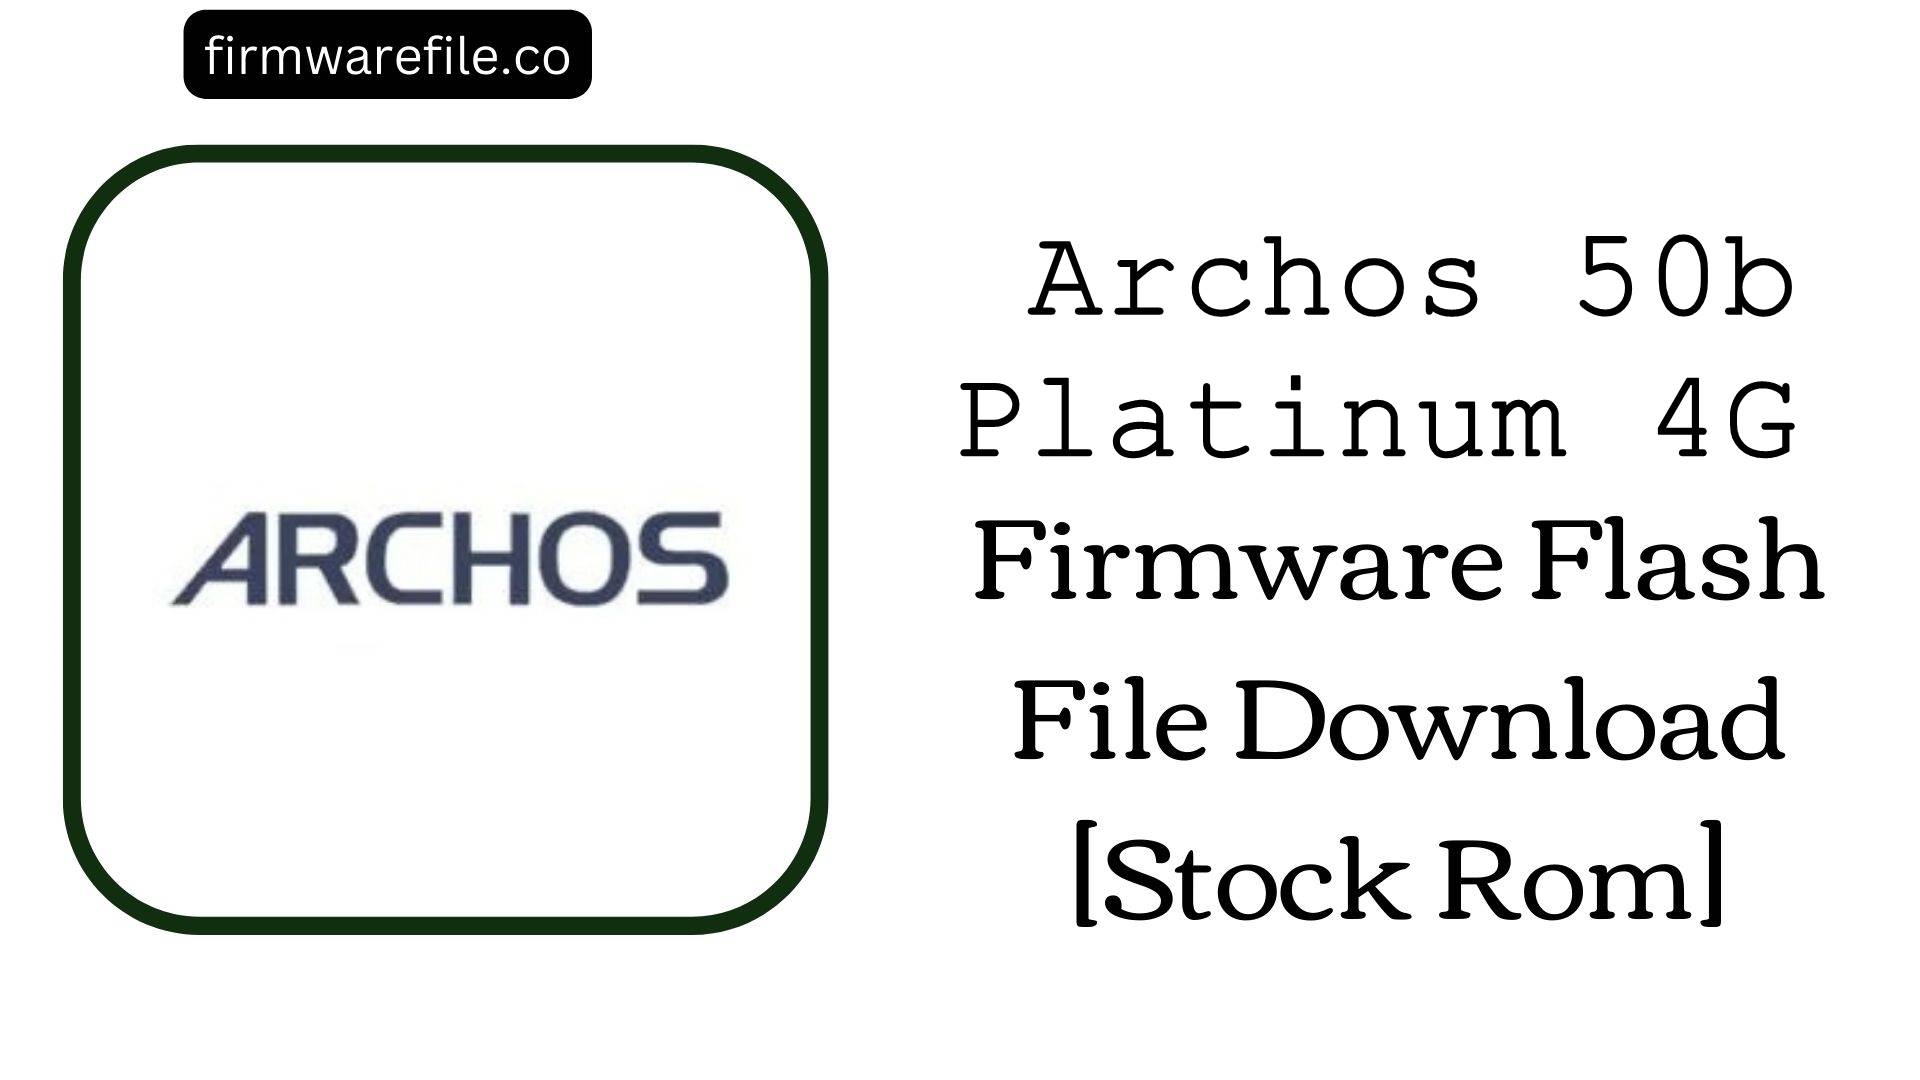 Archos 50b Platinum 4G